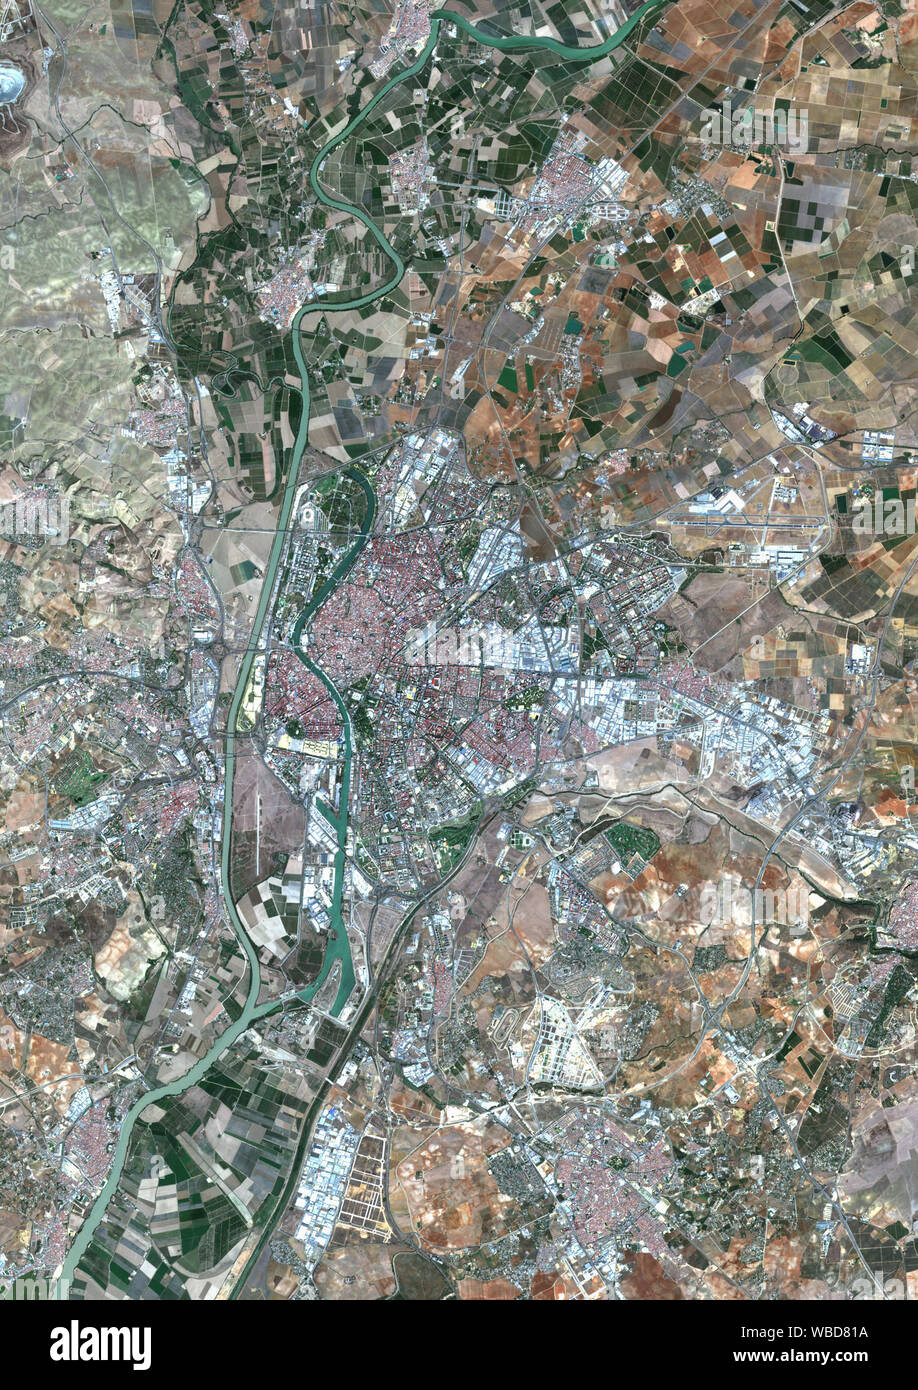 Farbe Satellitenbild von Sevilla, Spanien. Bild gesammelt am 4. Oktober 2018 von Sentinel-2 Satelliten. Stockfoto